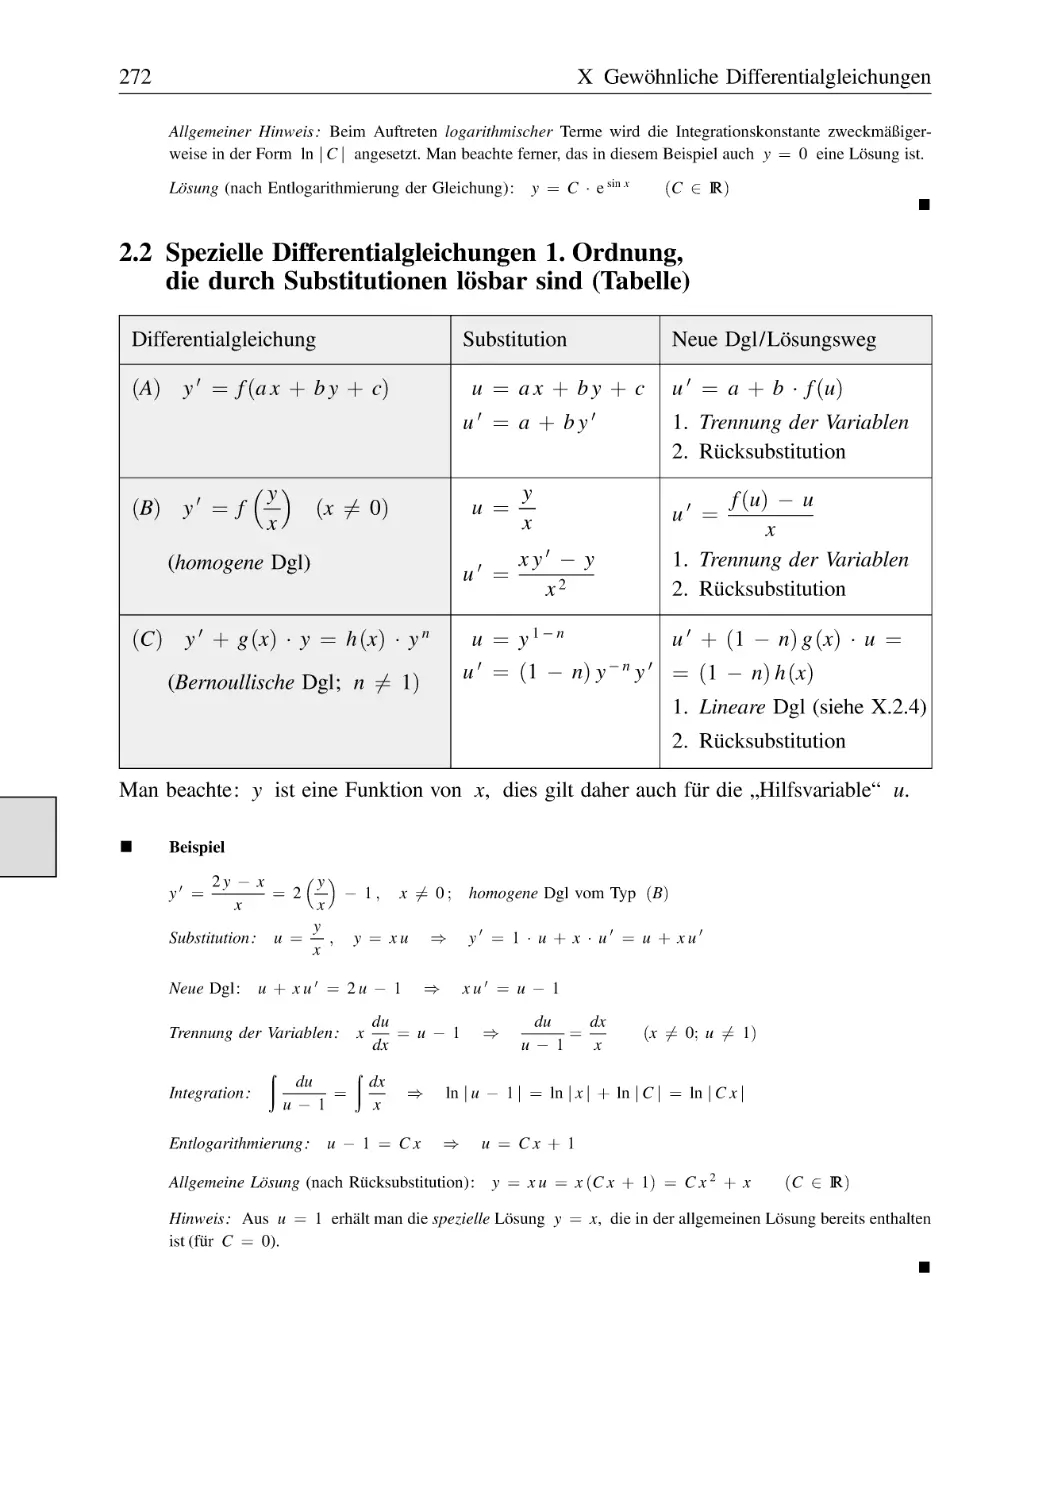 2.2 Spezielle Differentialgleichungen 1. Ordnung, die durch Substitutionen lösbar sind (Tabelle)